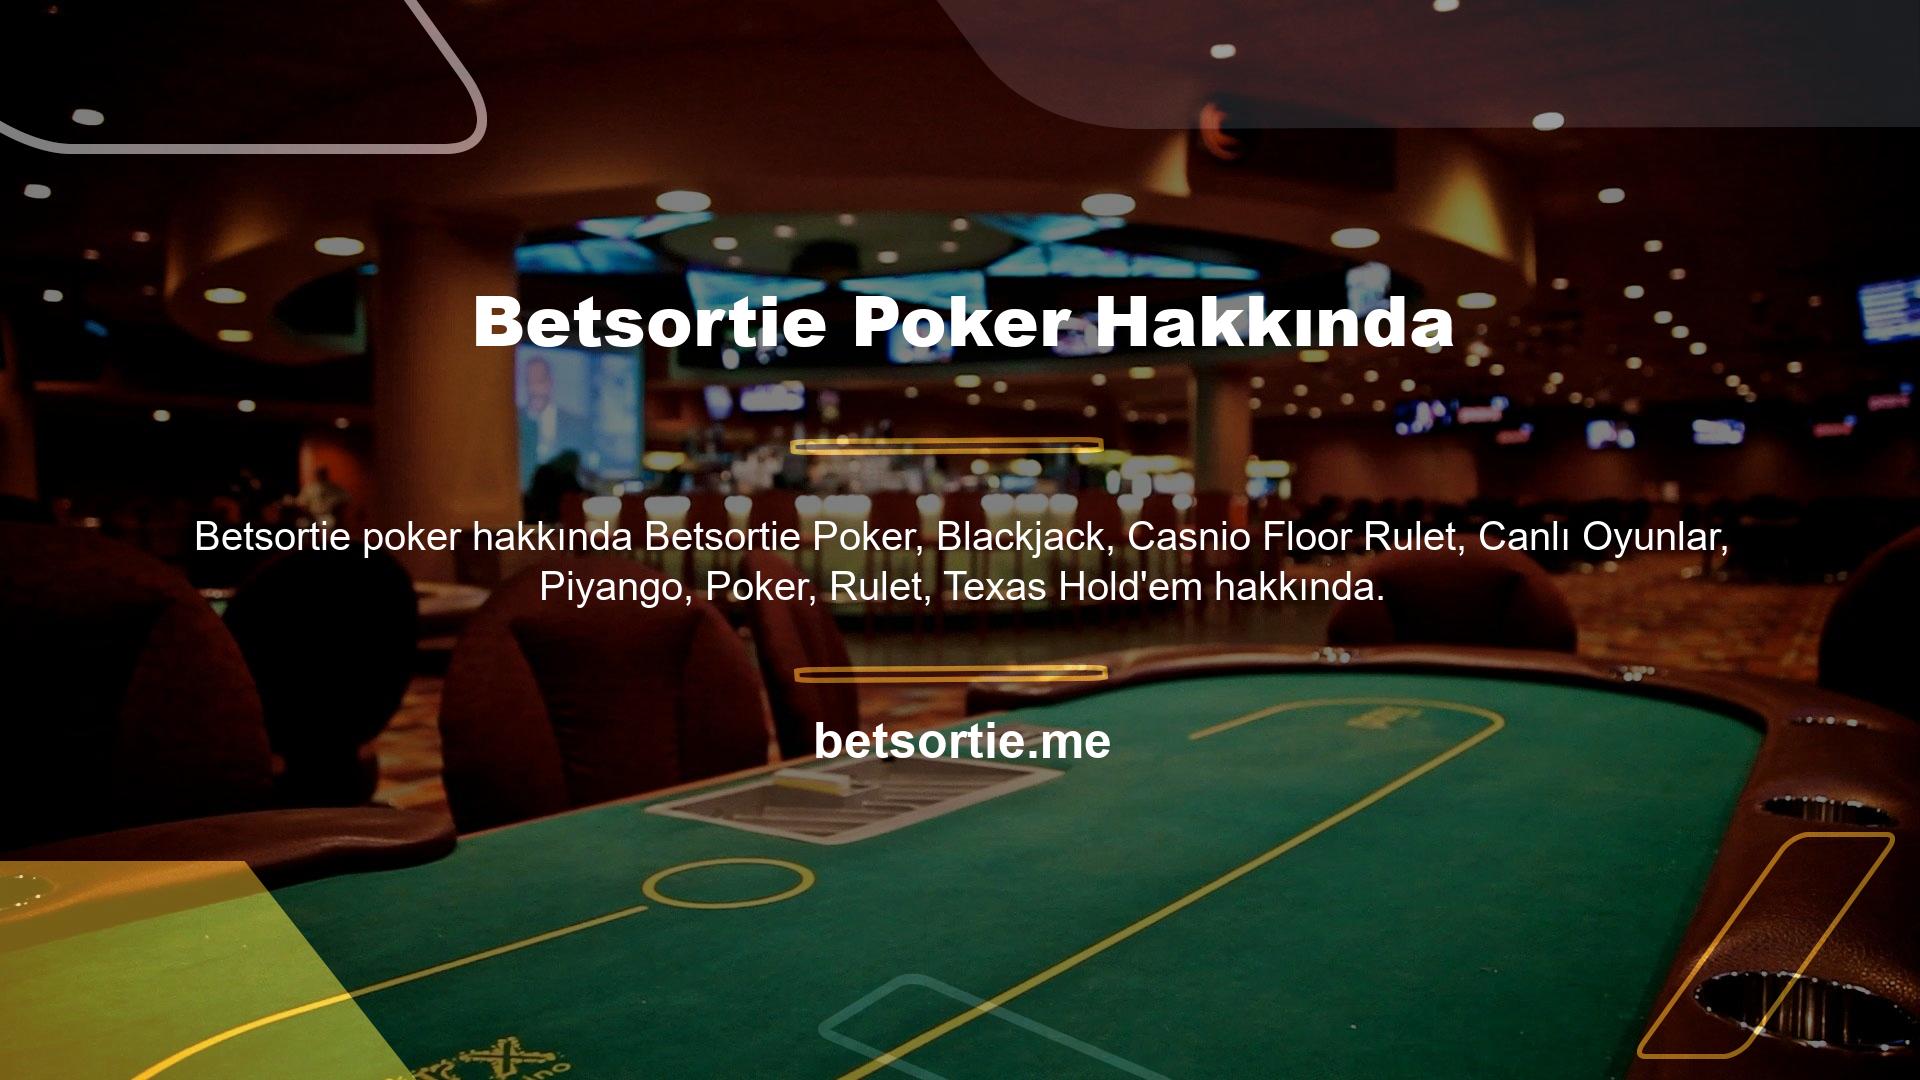 Bu canlı casino oyunları hakkında daha fazla detay için Betsortie müşteri hizmetleri ile iletişime geçebilirsiniz